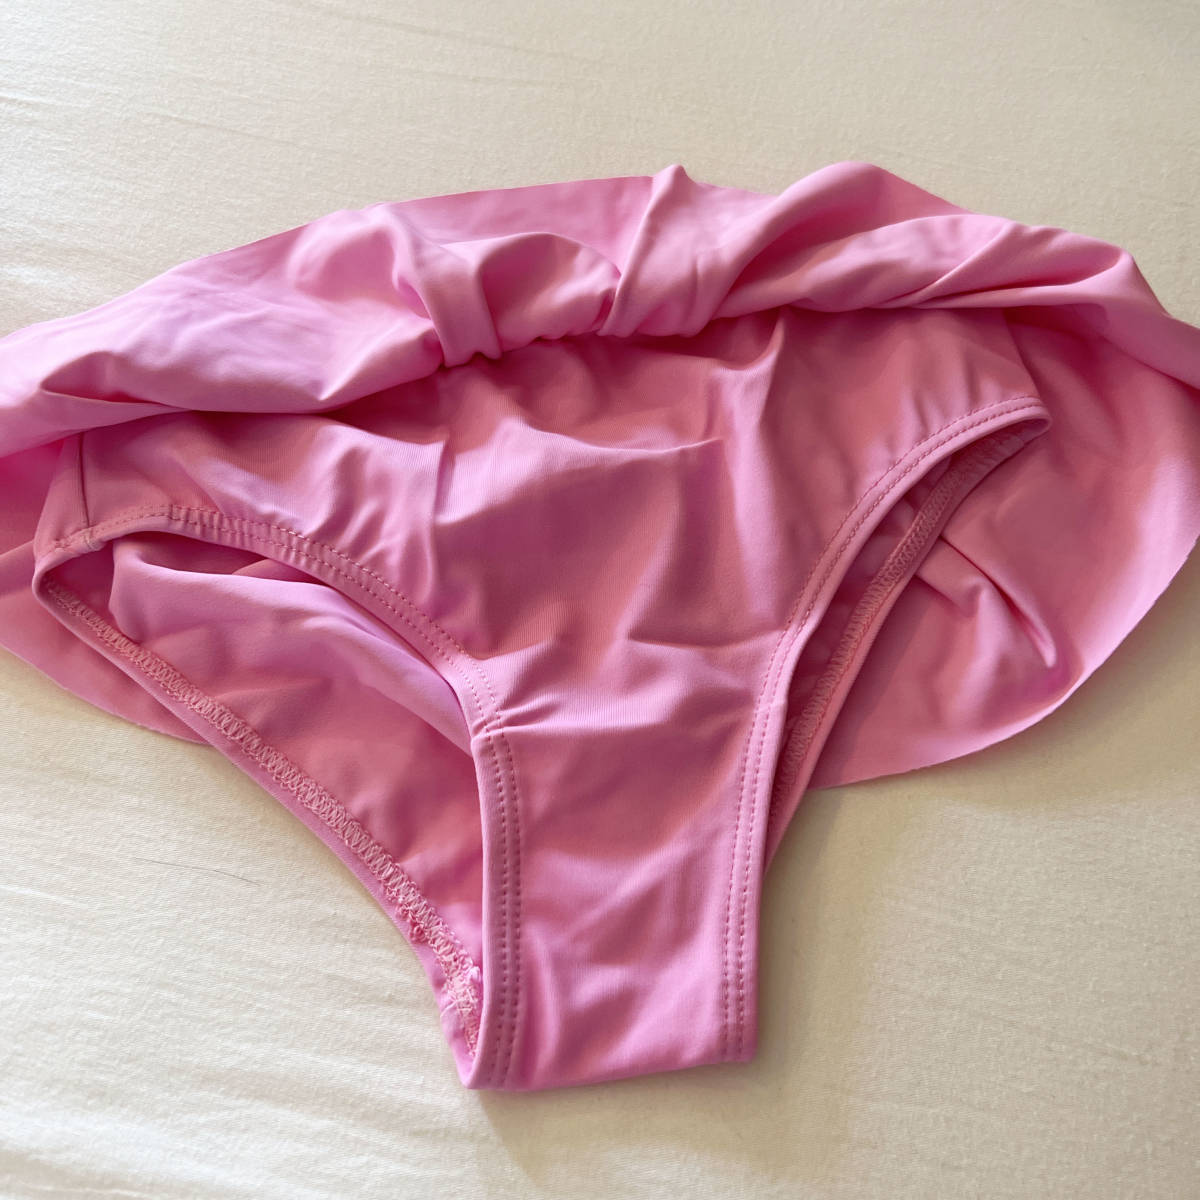 ラッシュガード 水着 セットアップ 120 女の子 ピンク 花柄 フリル パンツ かわいい セット 柄物 目立つ 旅行 ビーチ プール ベランダ